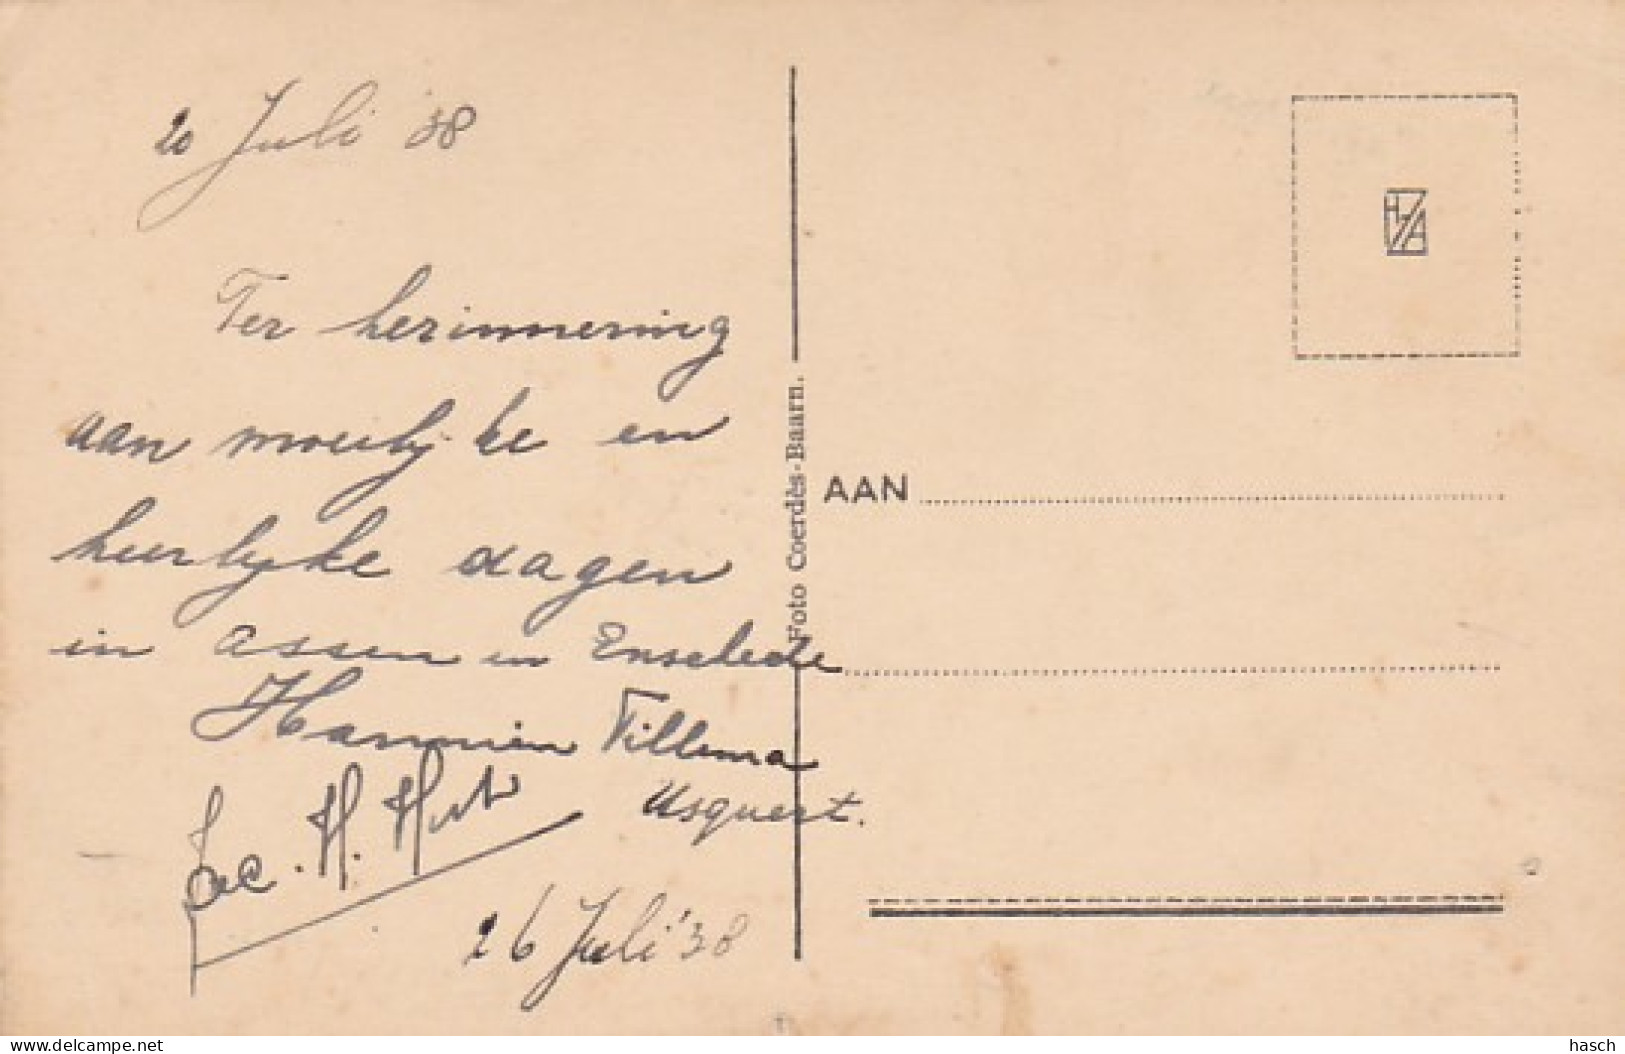 4858206Assen, Sanatorium ,,port Natal''. 1938  - Assen